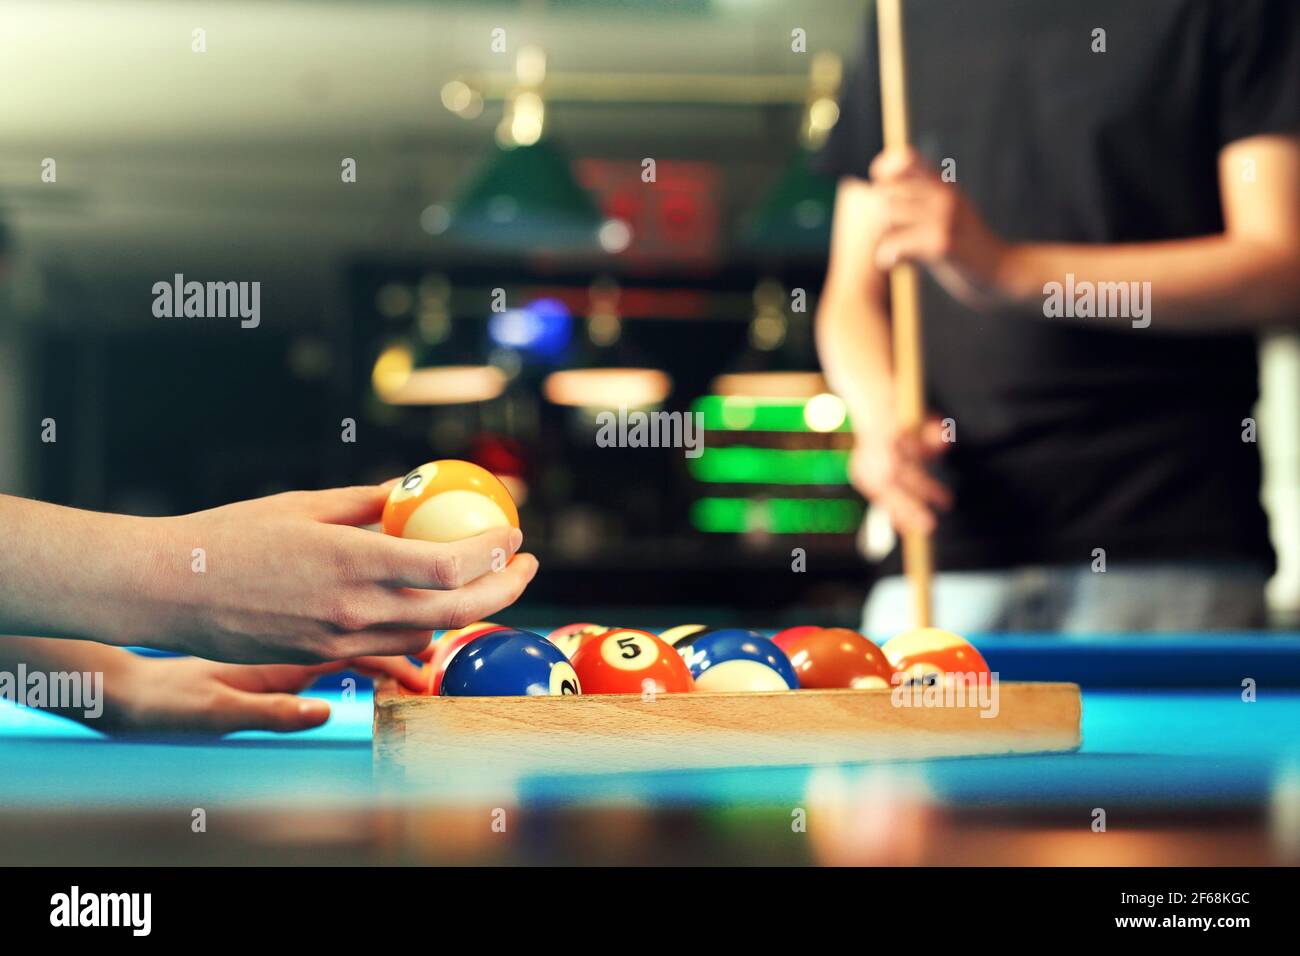 Giocando a biliardo, il giocatore mette le palle sul tavolo da biliardo. Foto Stock